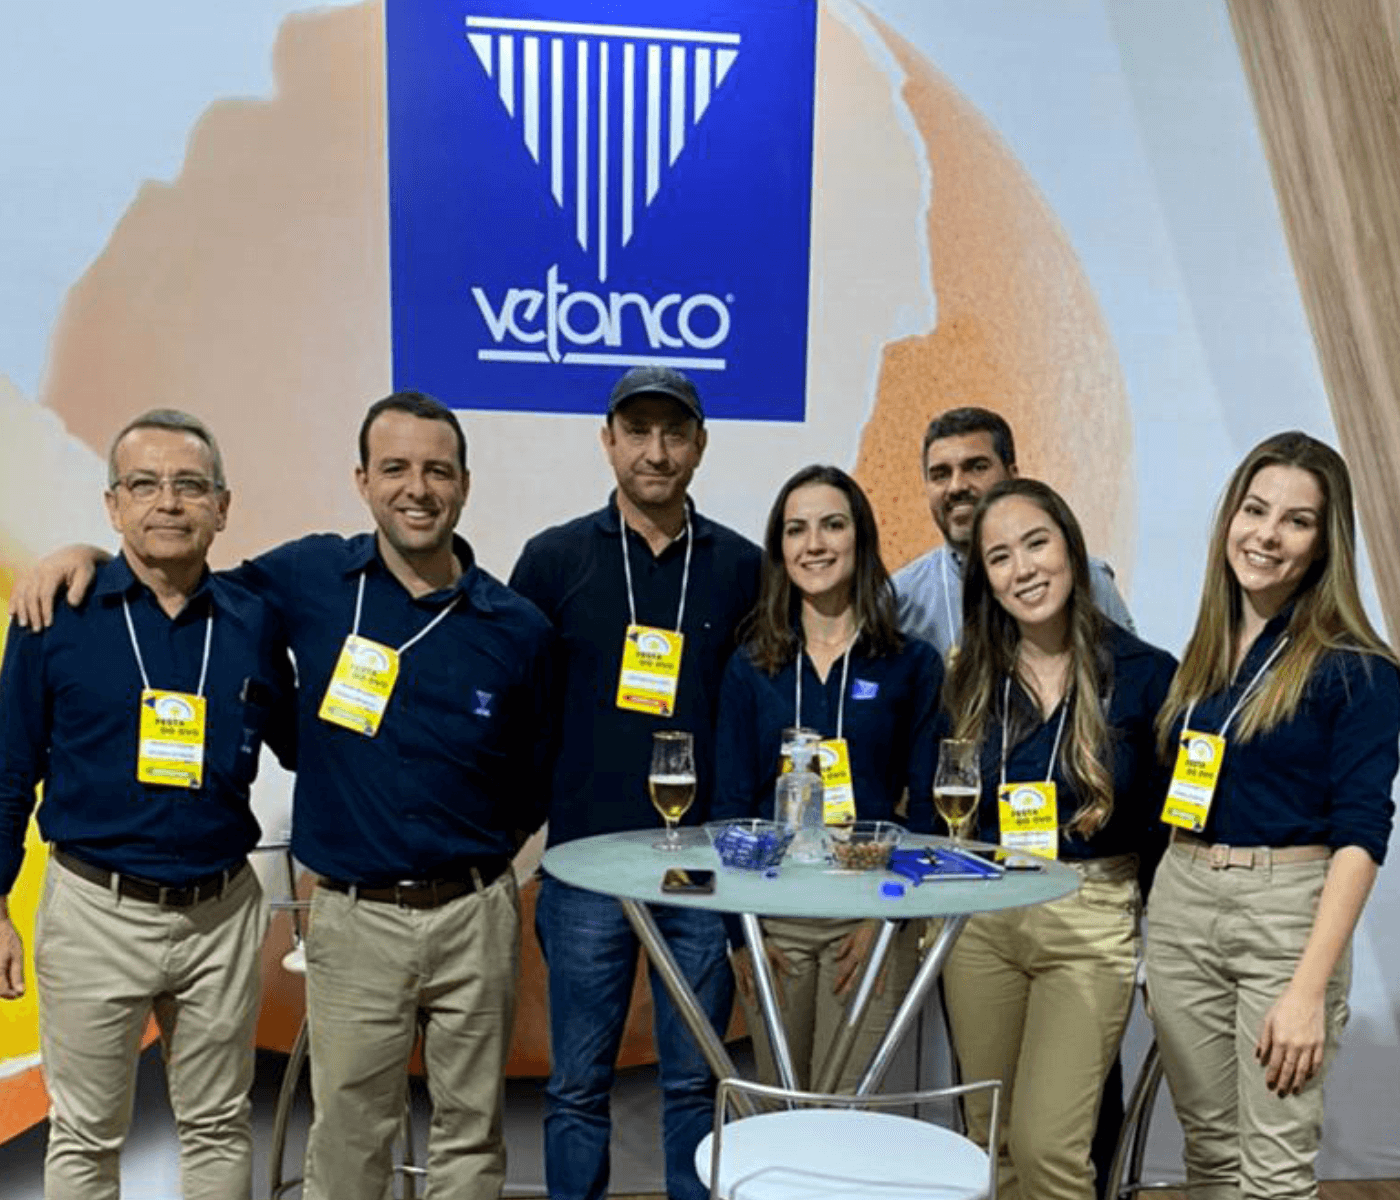 Vetanco prestigia 61ª Festa do Ovo de Bastos e apresenta novos produtos e serviços aos clientes